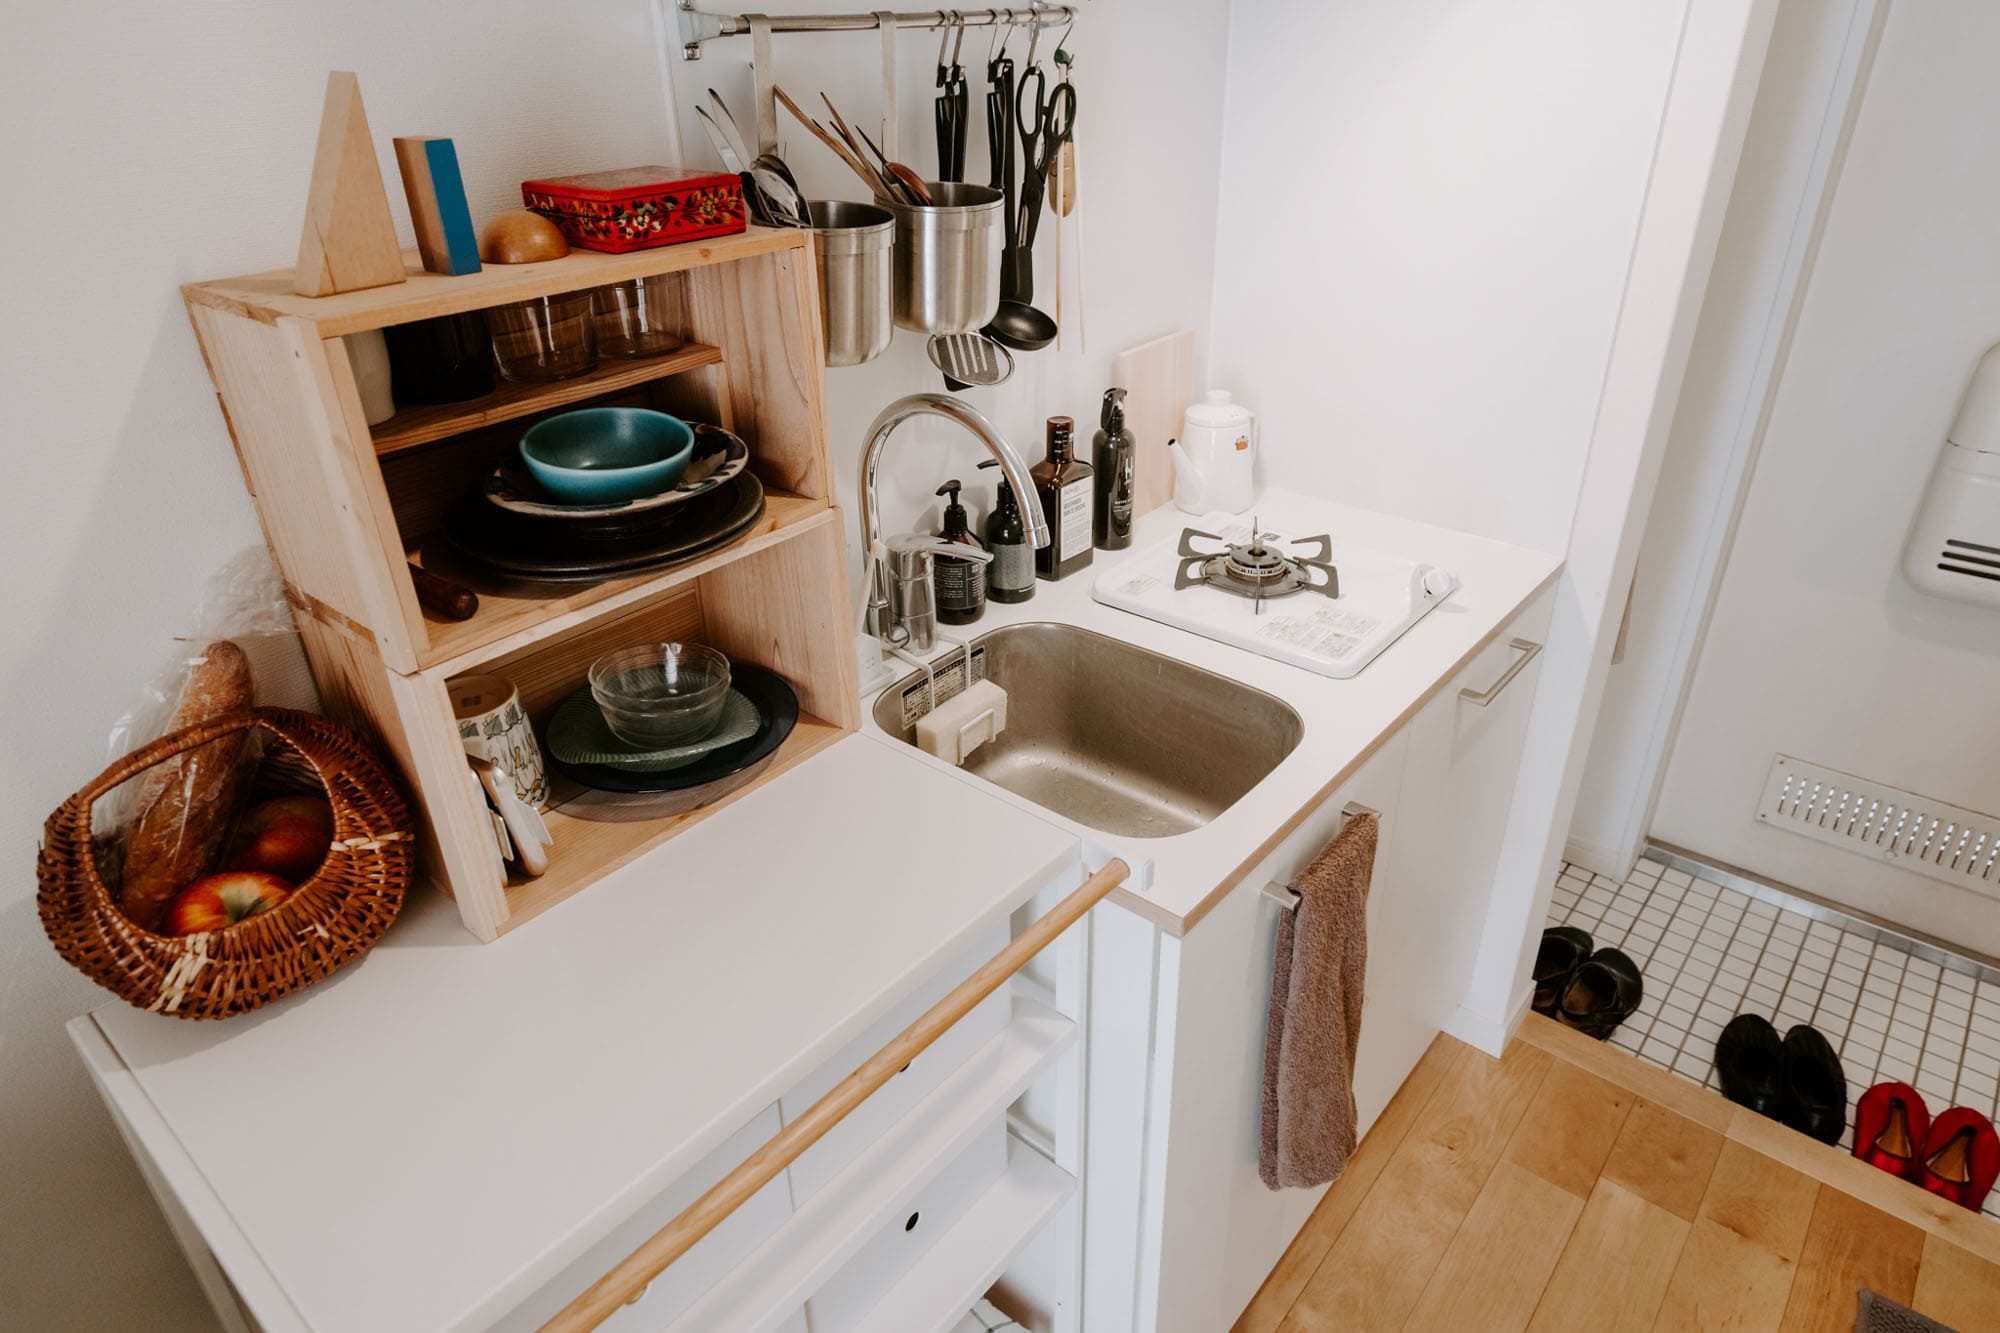 もしキッチン横に余裕があれば、ラックを設置して収納場所を増やすというのも1つの手。キッチンの高さや色に合わせたものを選べば、作業台としてもスッと空間に馴染んでくれます。 